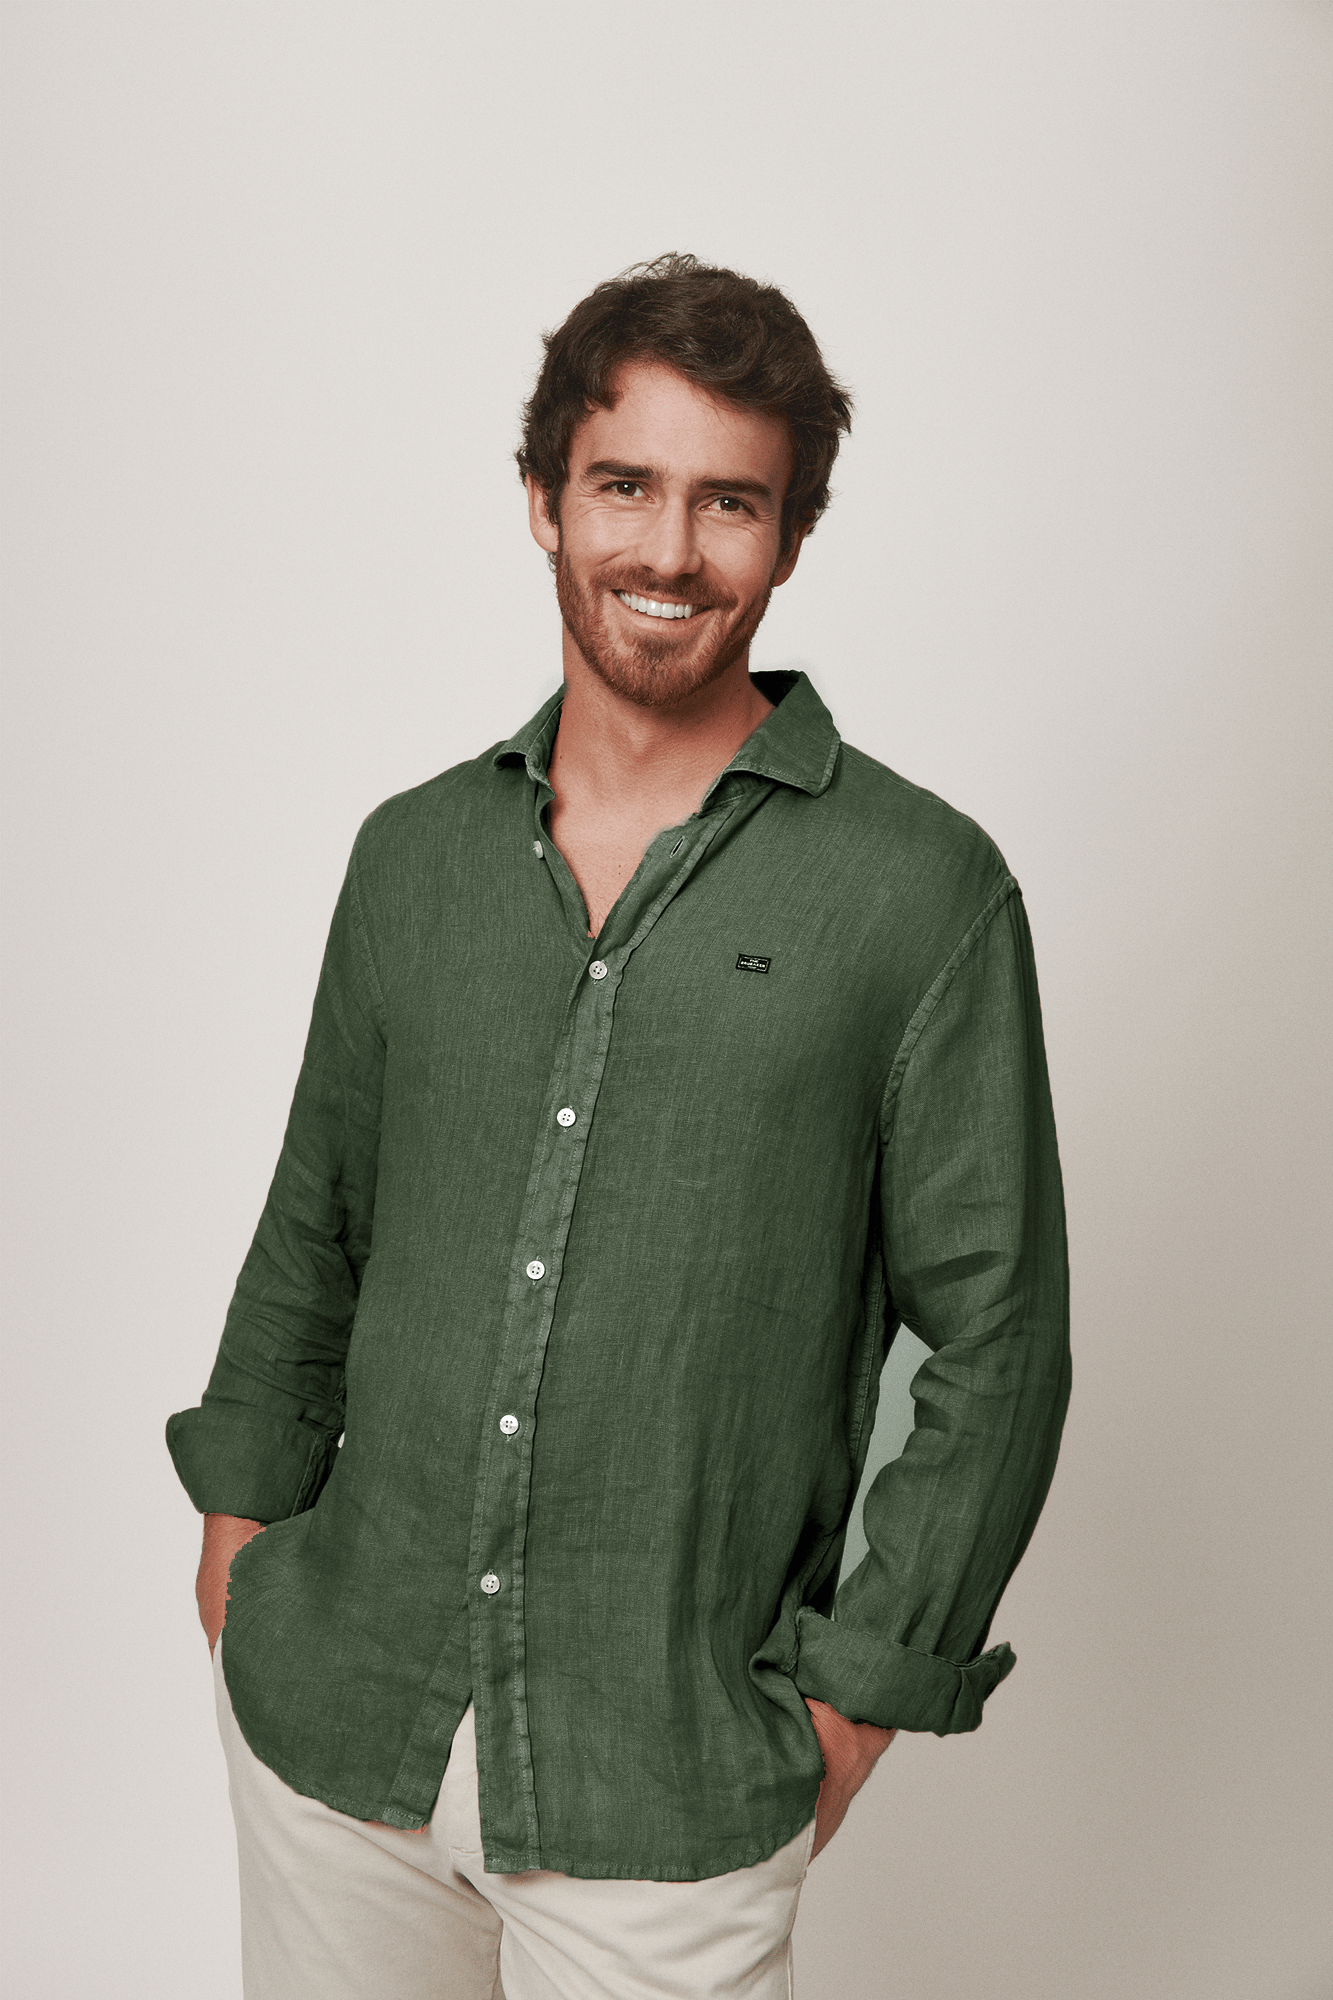 The Lino Camisa Verde Pino